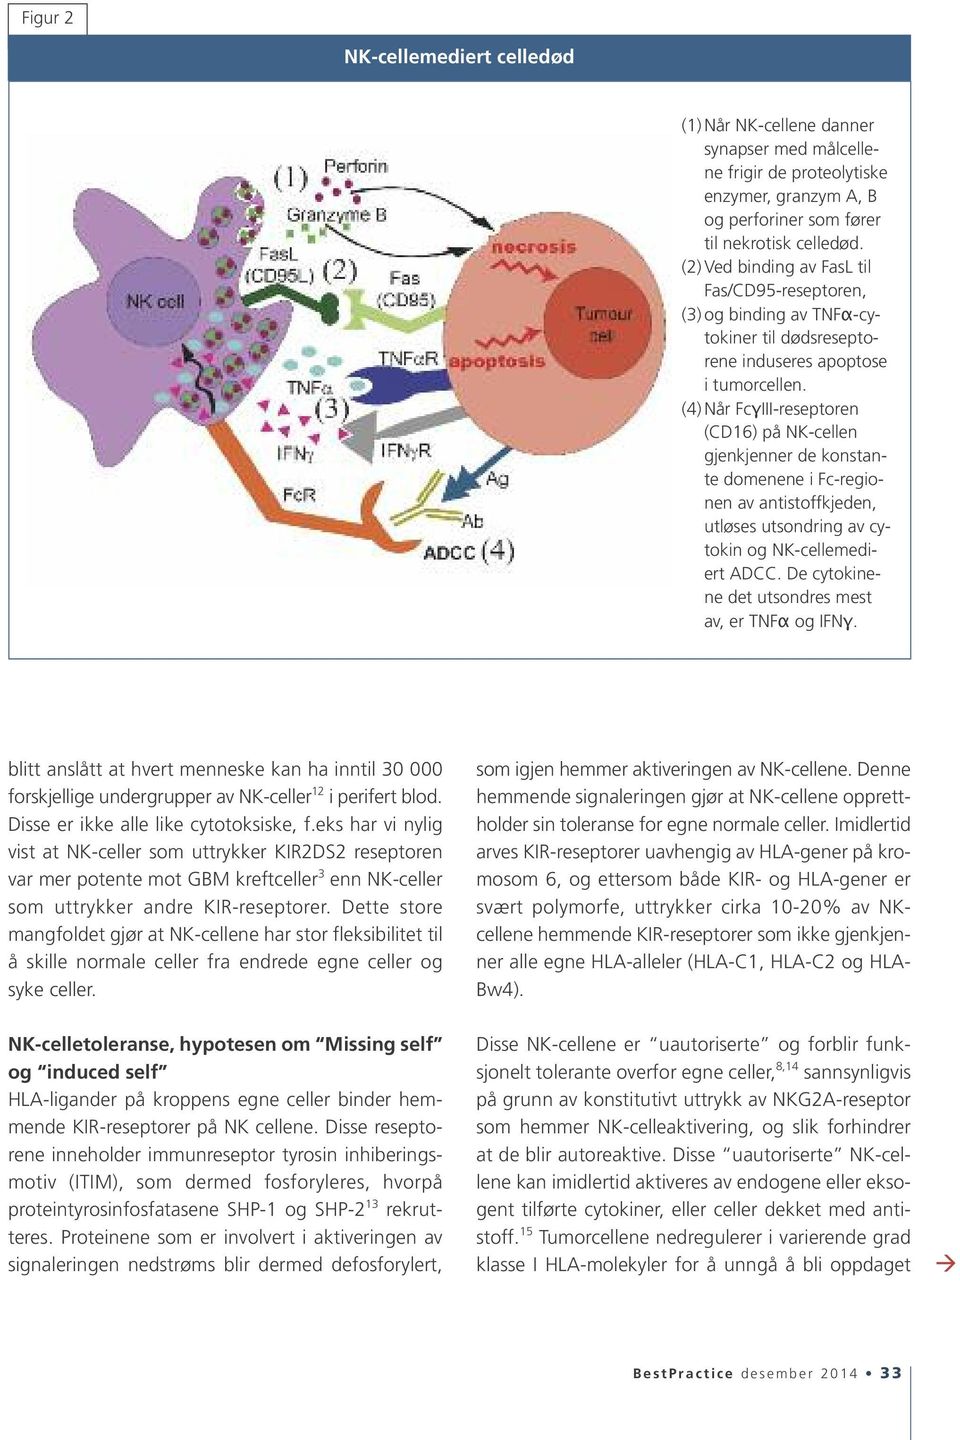 (4) Når FcγIII-reseptoren (CD16) på NK-cellen gjenkjenner de konstante domenene i Fc-regionen av antistoffkjeden, utløses utsondring av cytokin og NK-cellemediert ADCC.